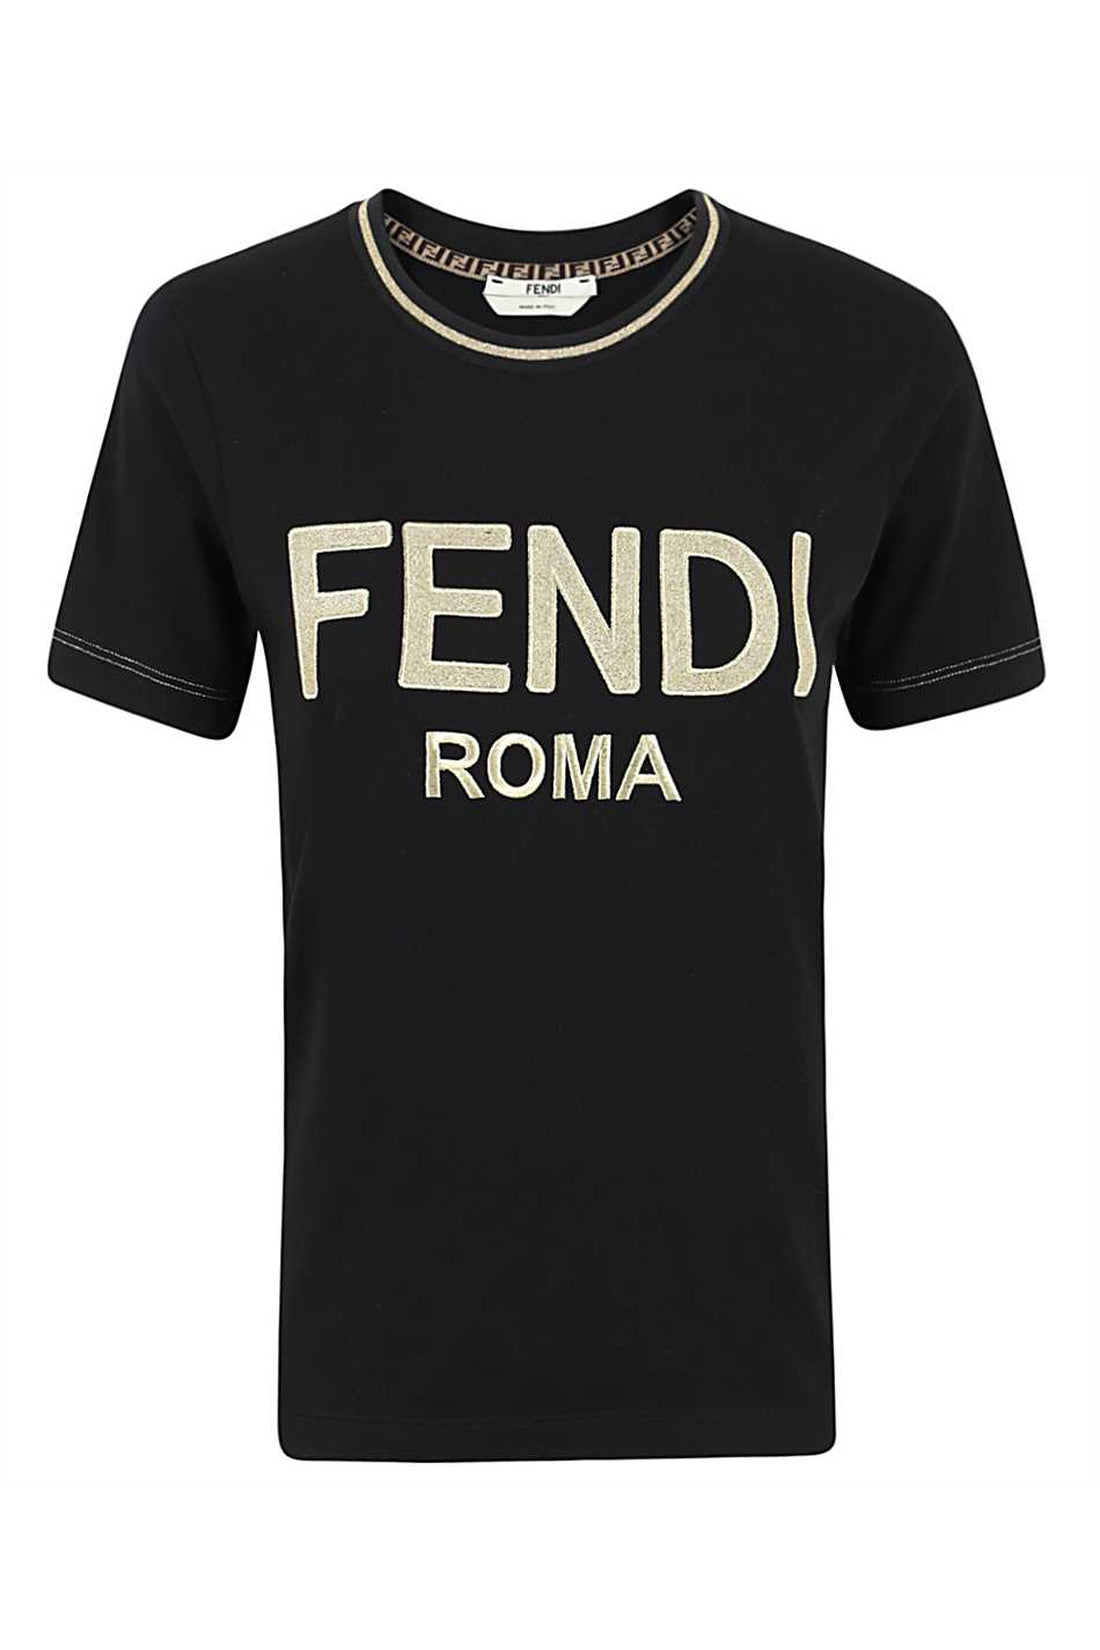 Fendi-OUTLET-SALE-Logo cotton t-shirt-ARCHIVIST